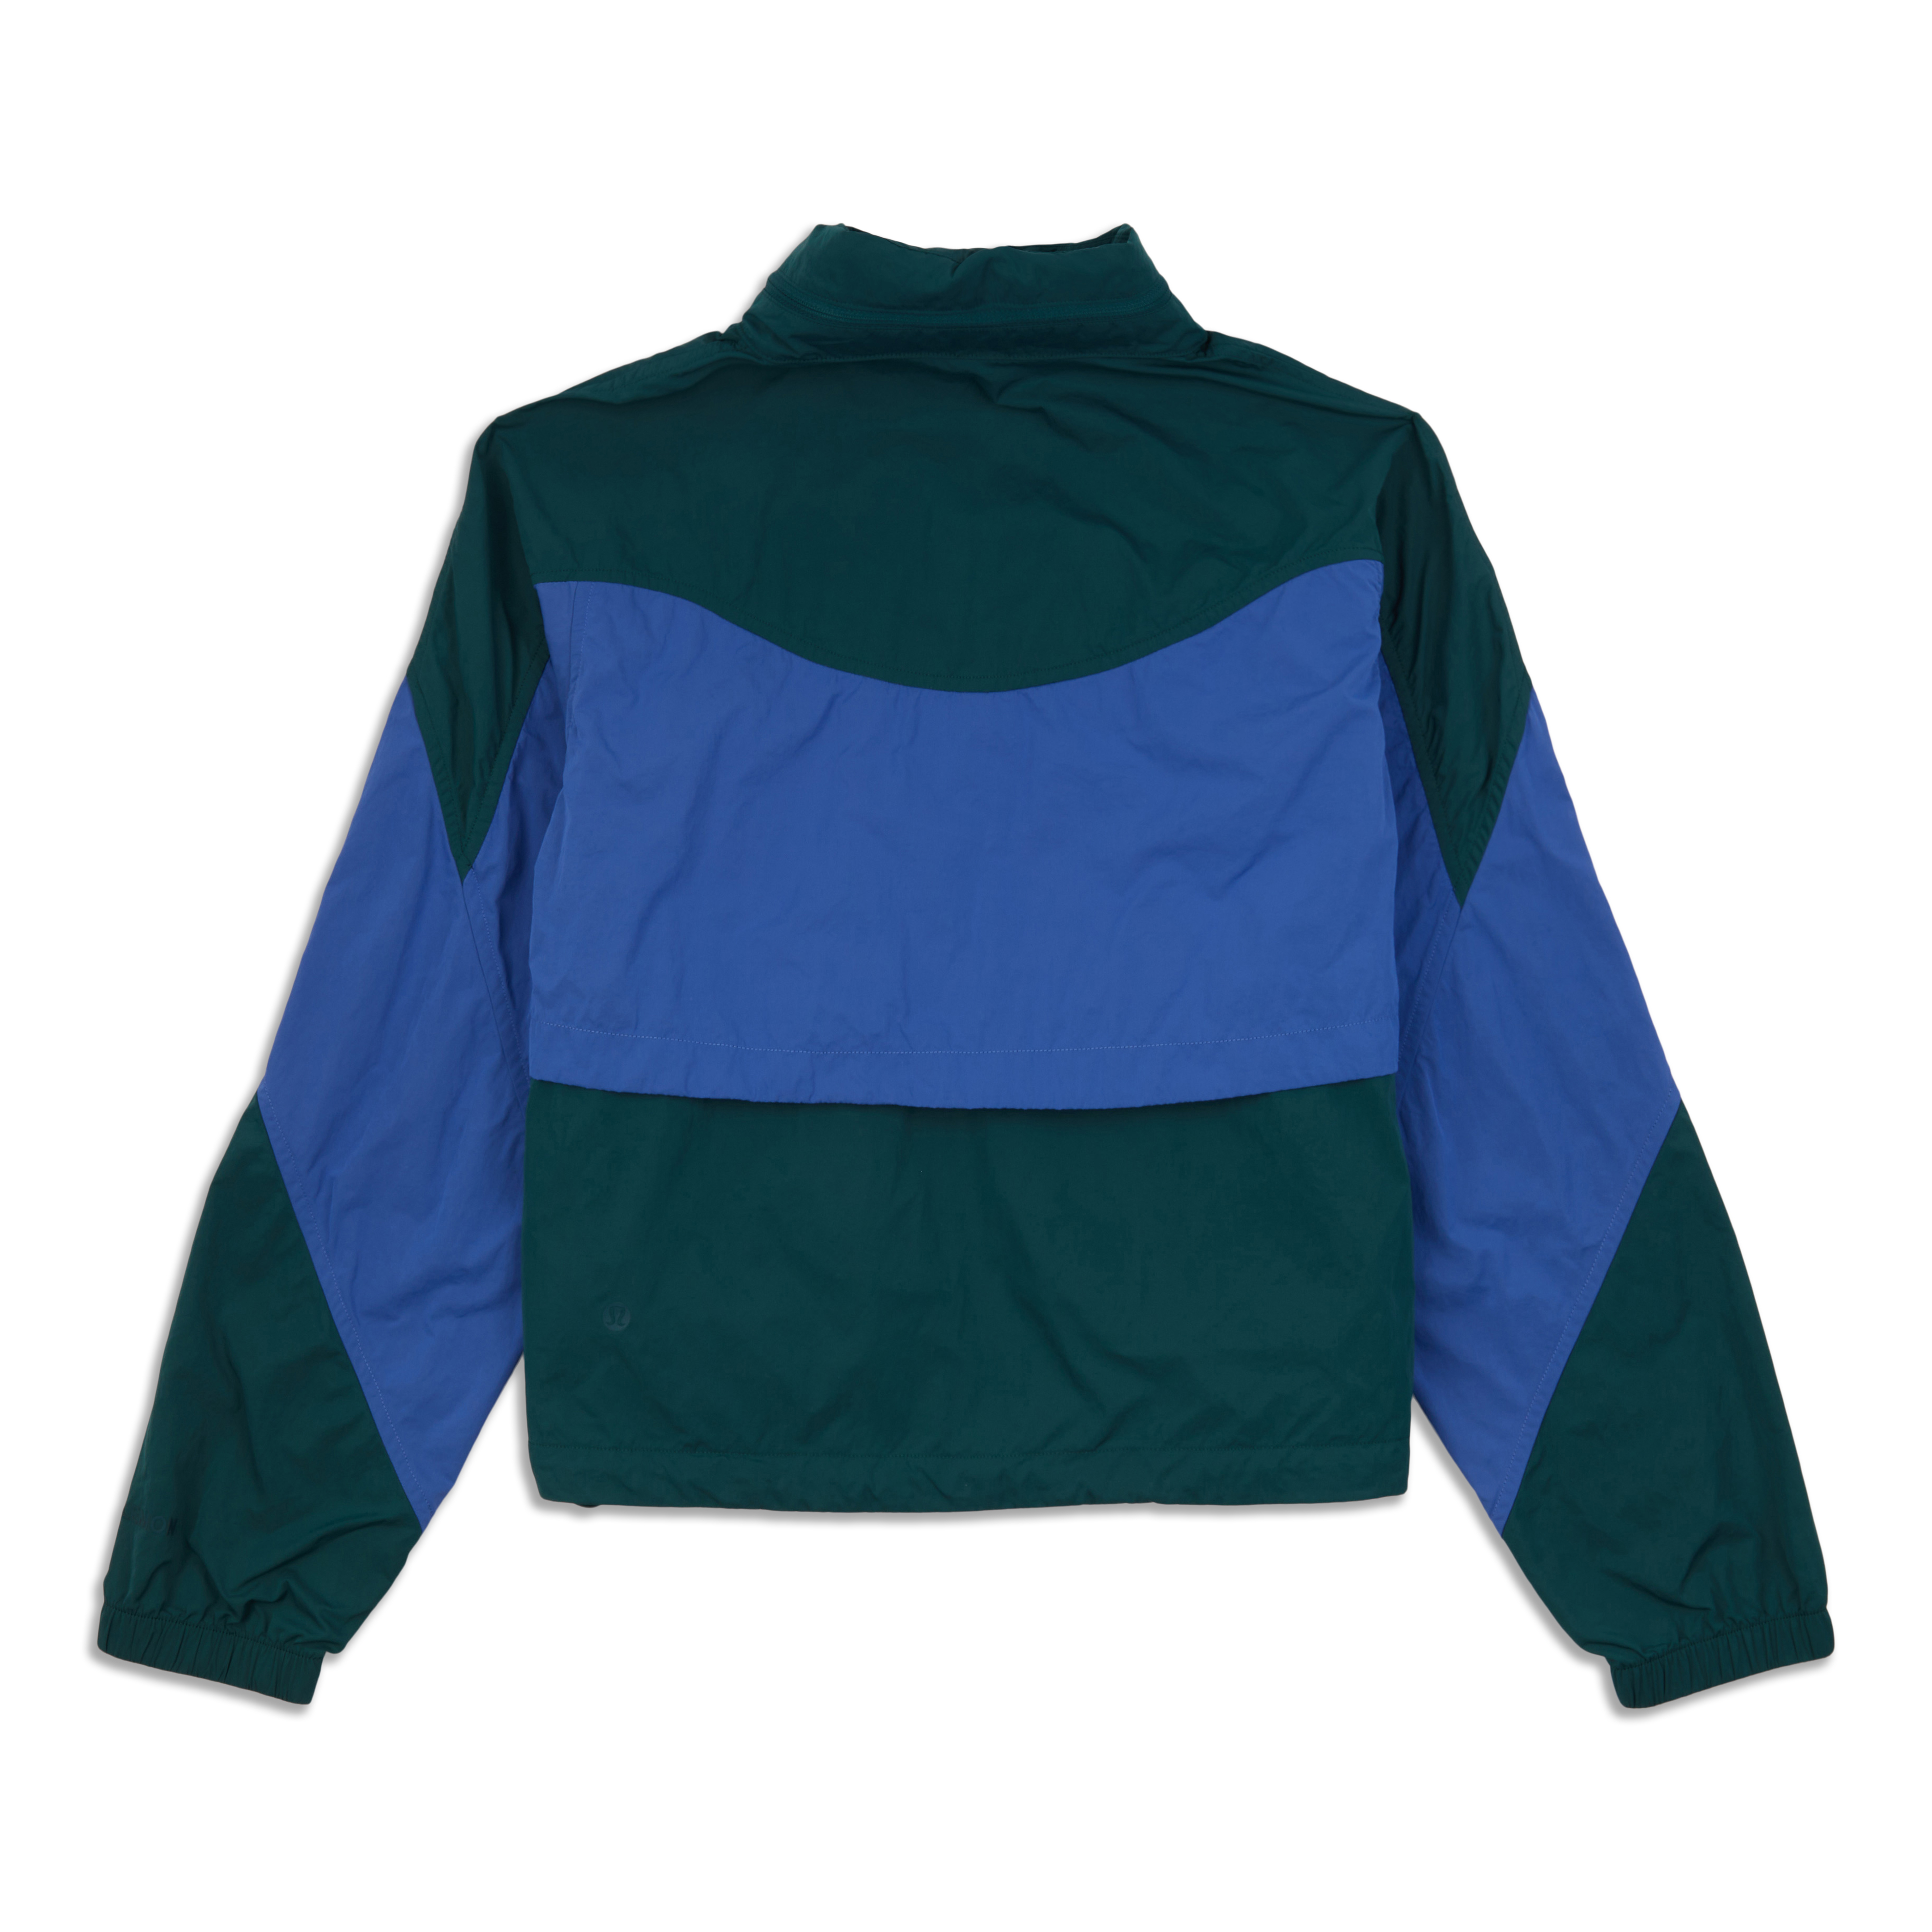 Lululemon Athletica Zip Up Jacket – Hudson Thrift Shoppe